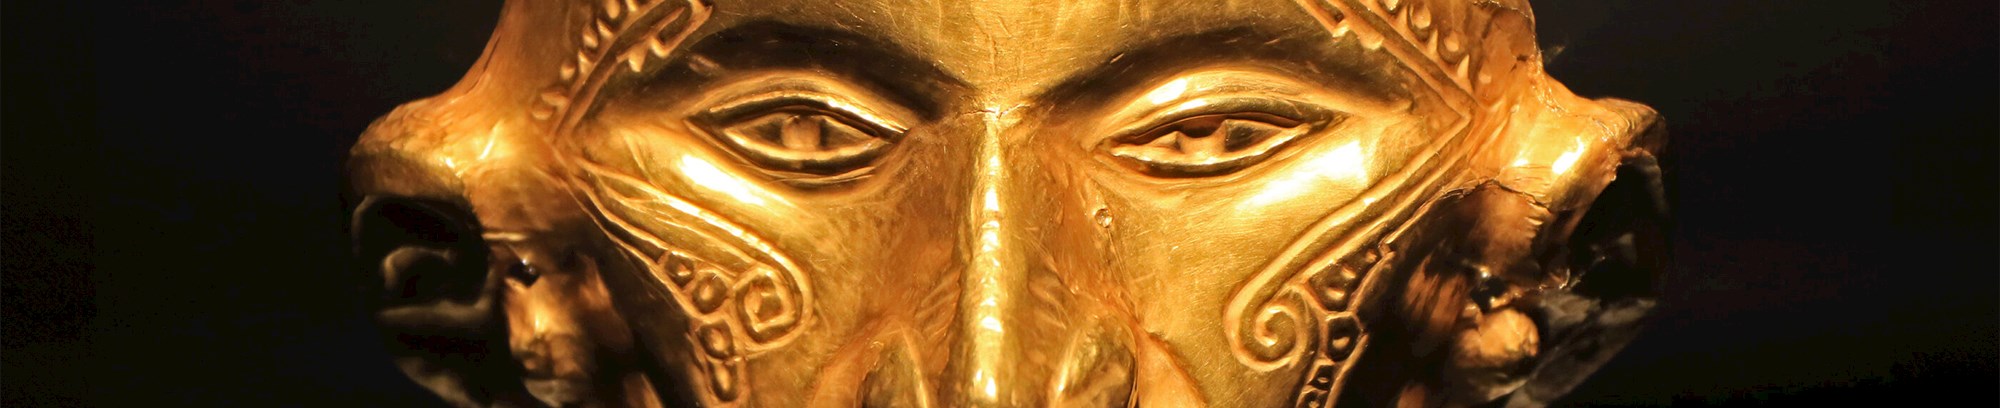 Guldmaske fra et museum